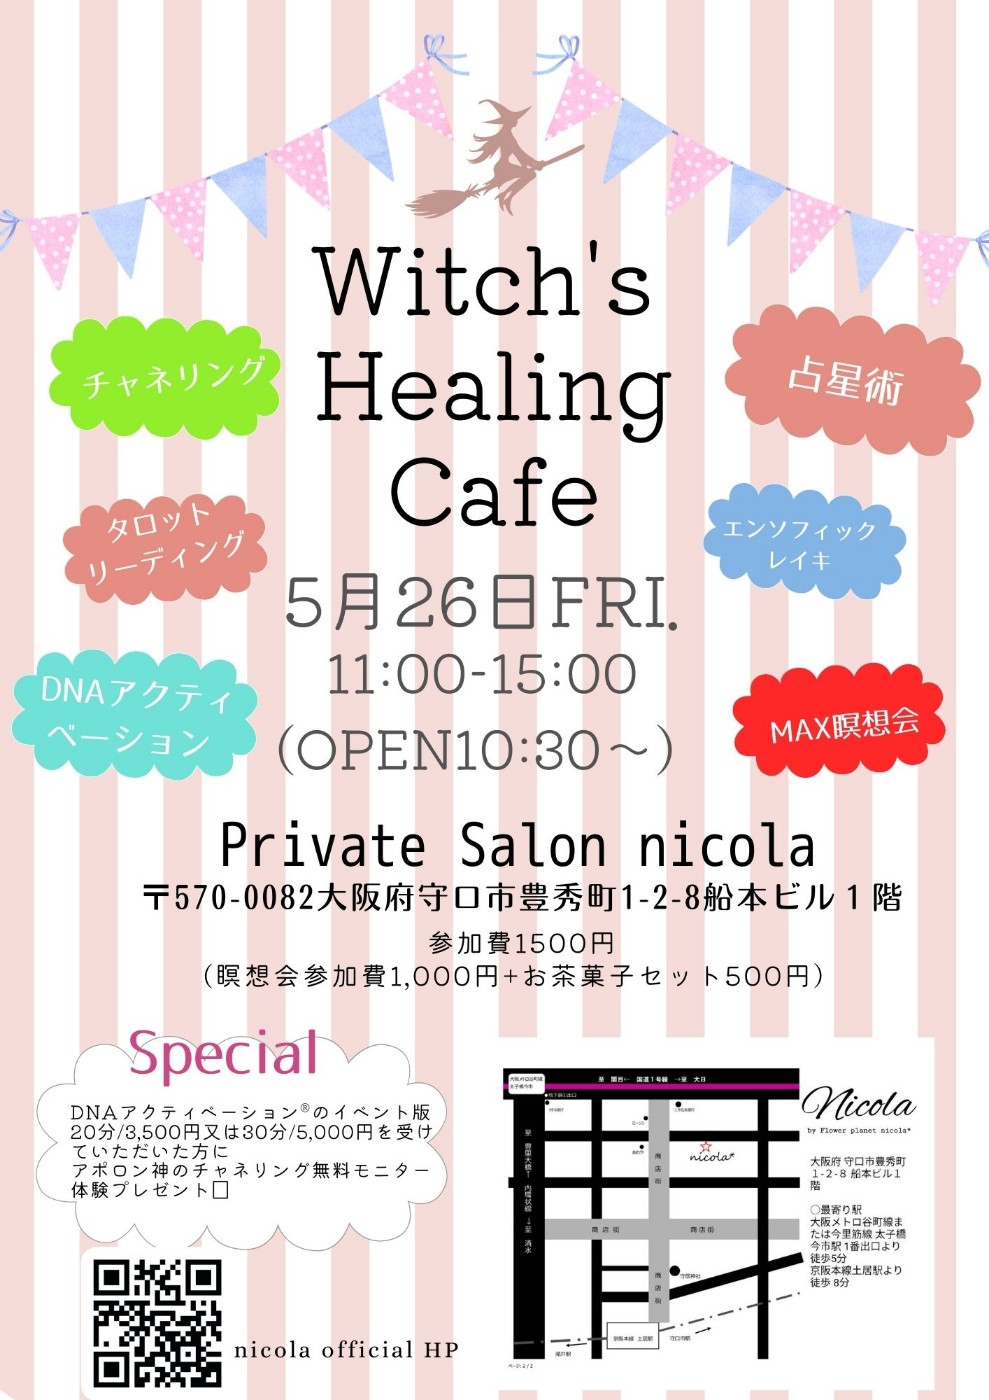 5月26日㈮ Witch’s Healing Cafe開催です☆